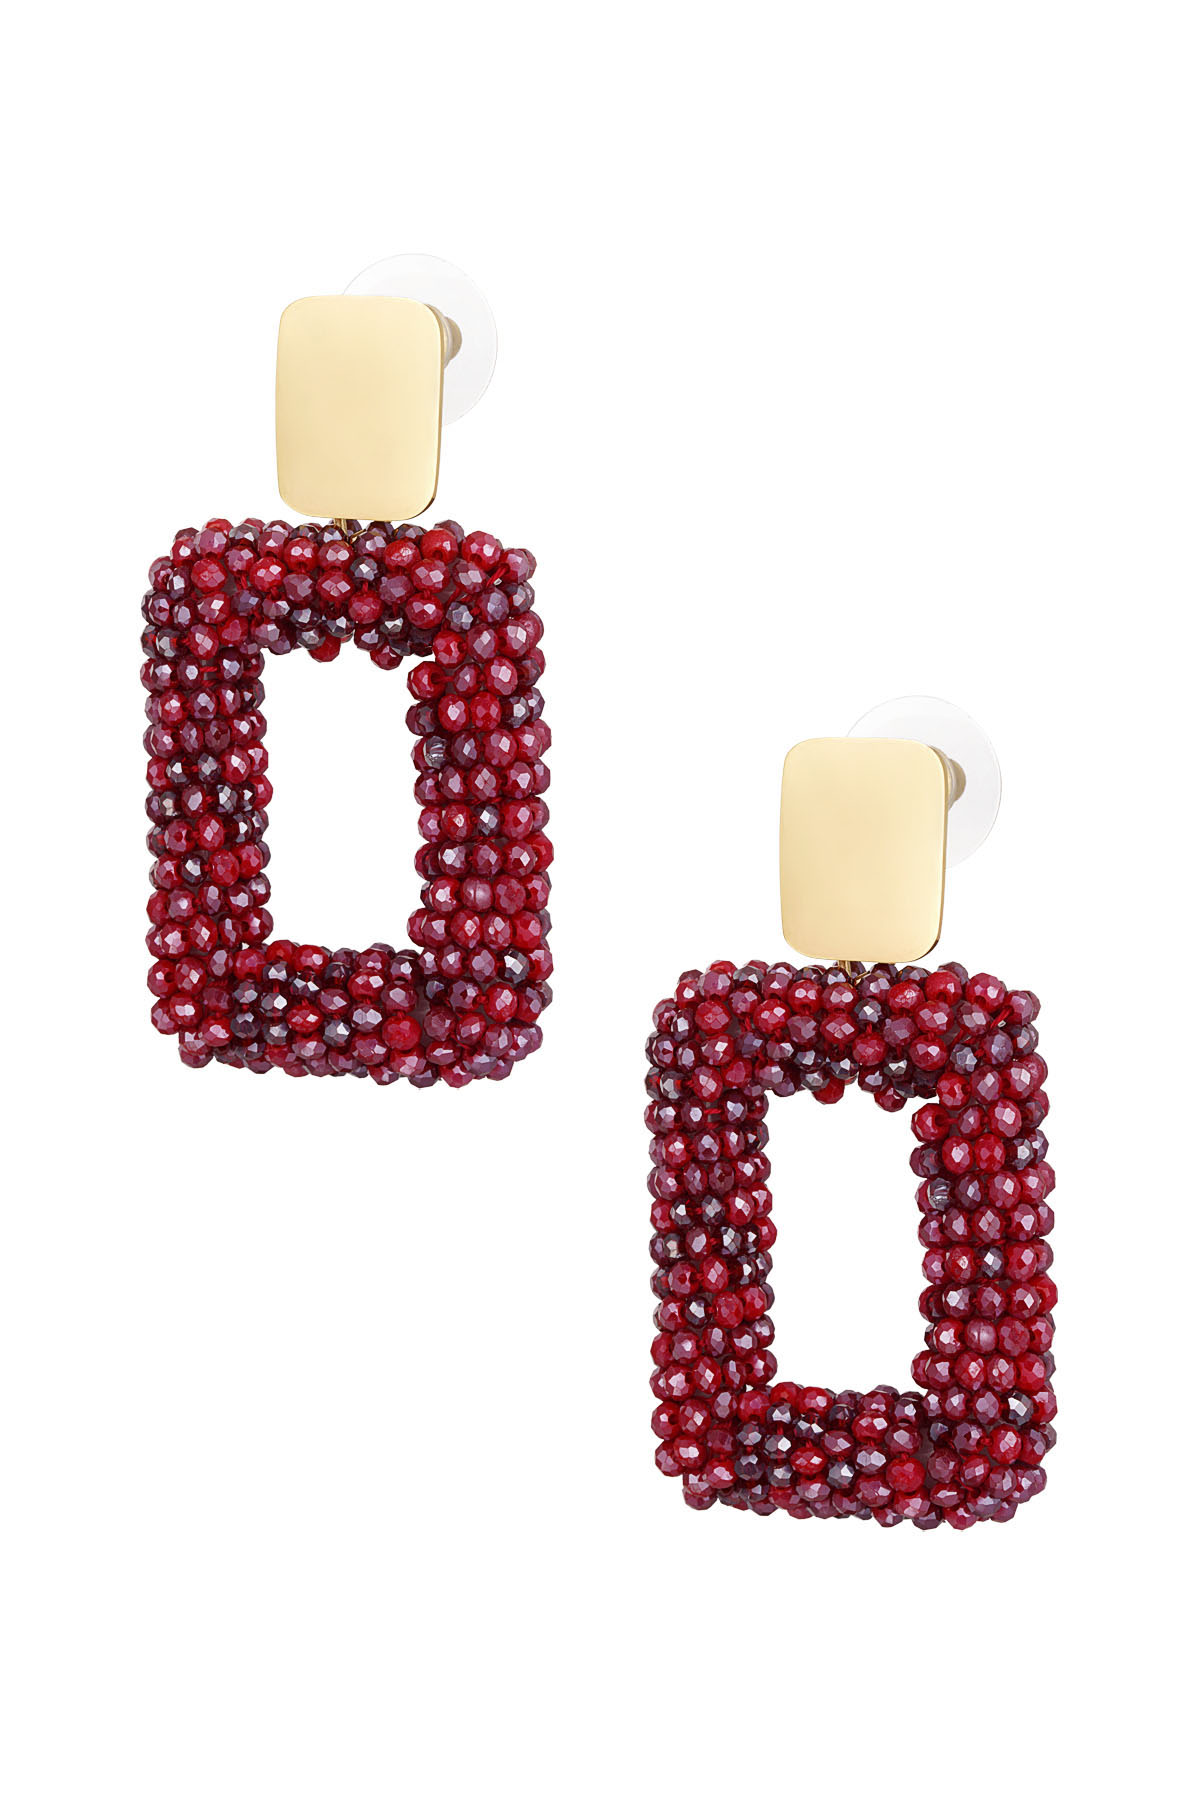 orecchini rettangolari con perle di vetro - rossi h5 